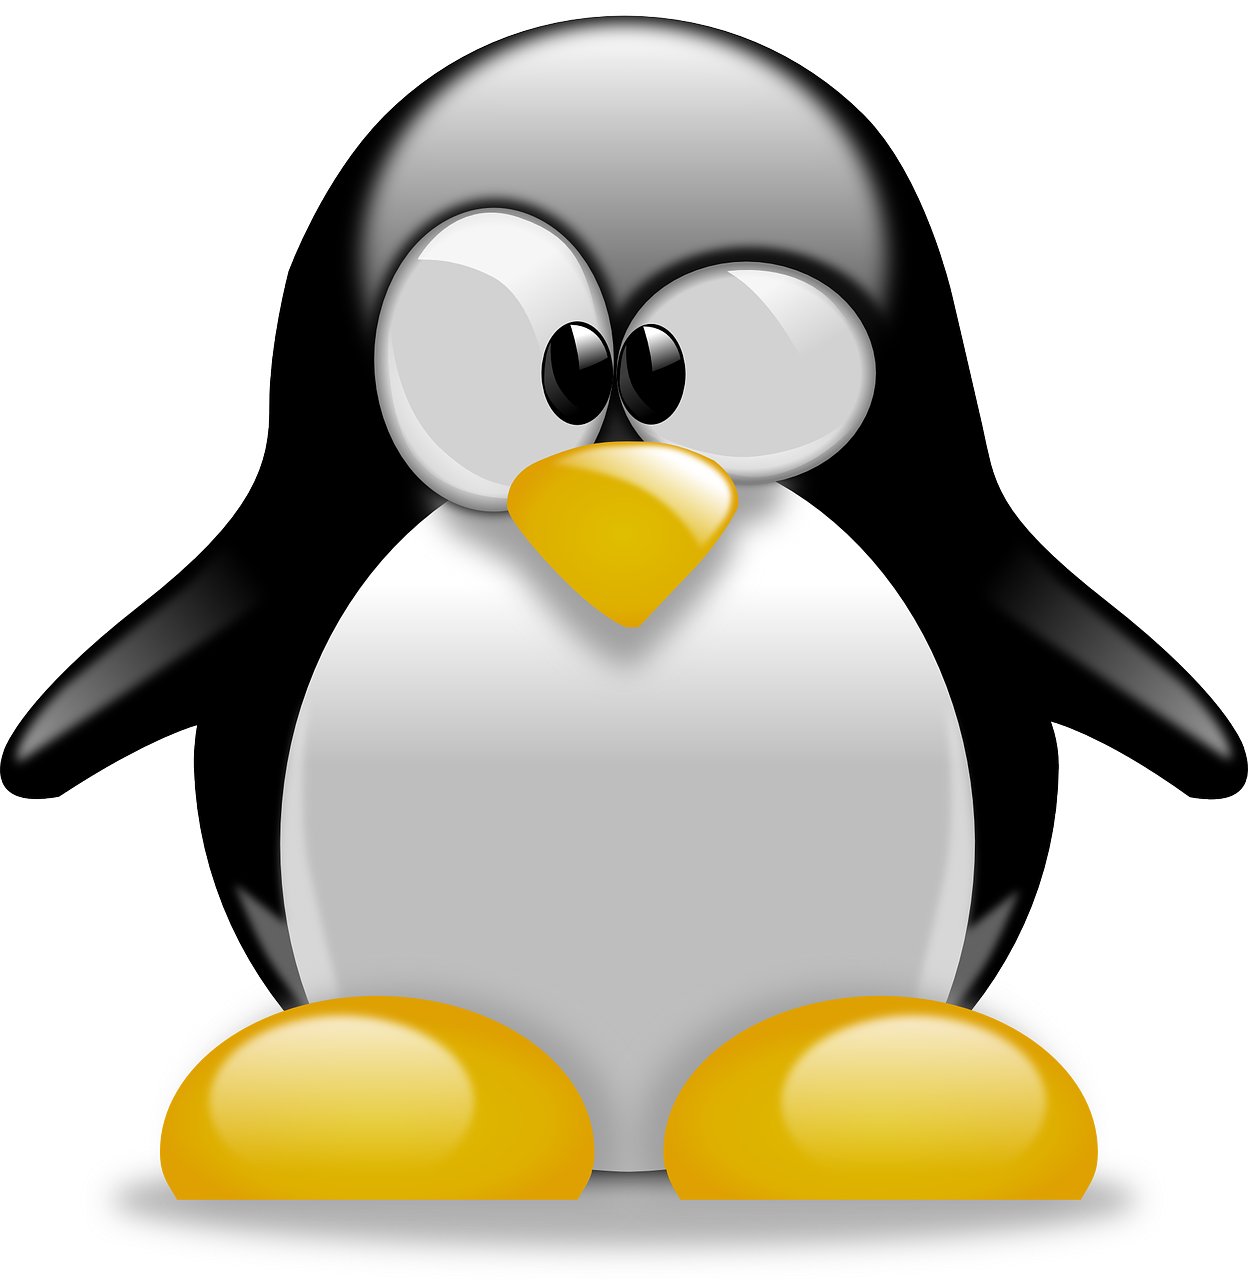 Linux Basics for Beginners